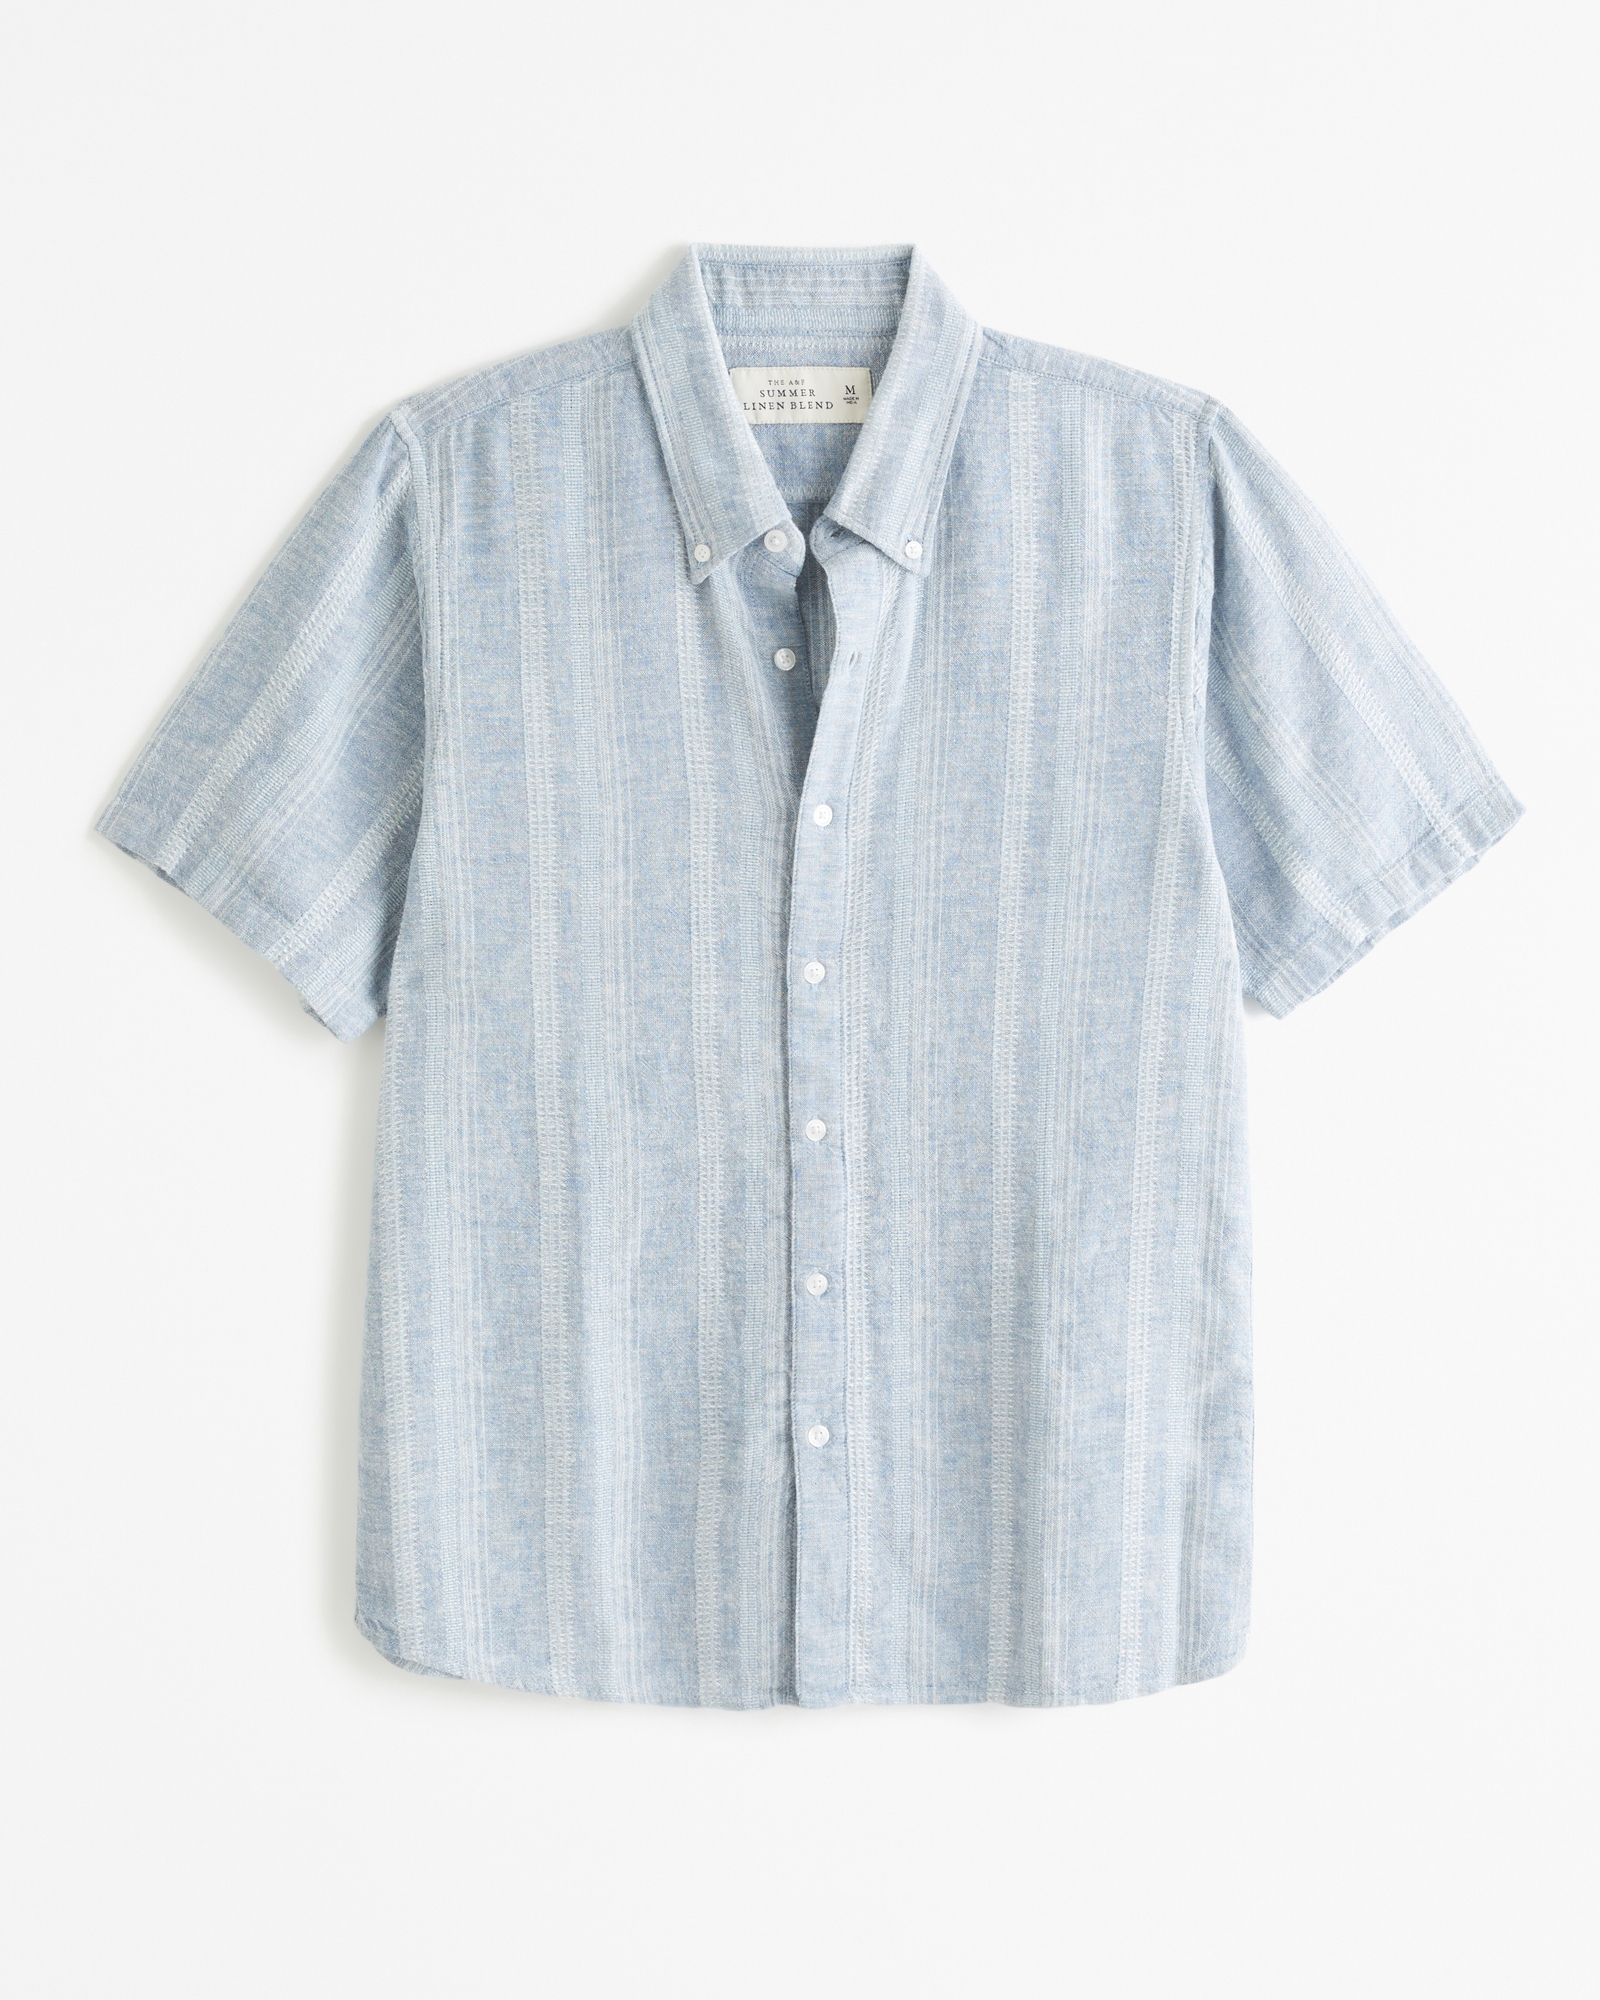 Men's Short-Sleeve Summer Linen-Blend Button-Up Shirt in Light Blue Stripe | Size XS | Abercrombie & Fitch